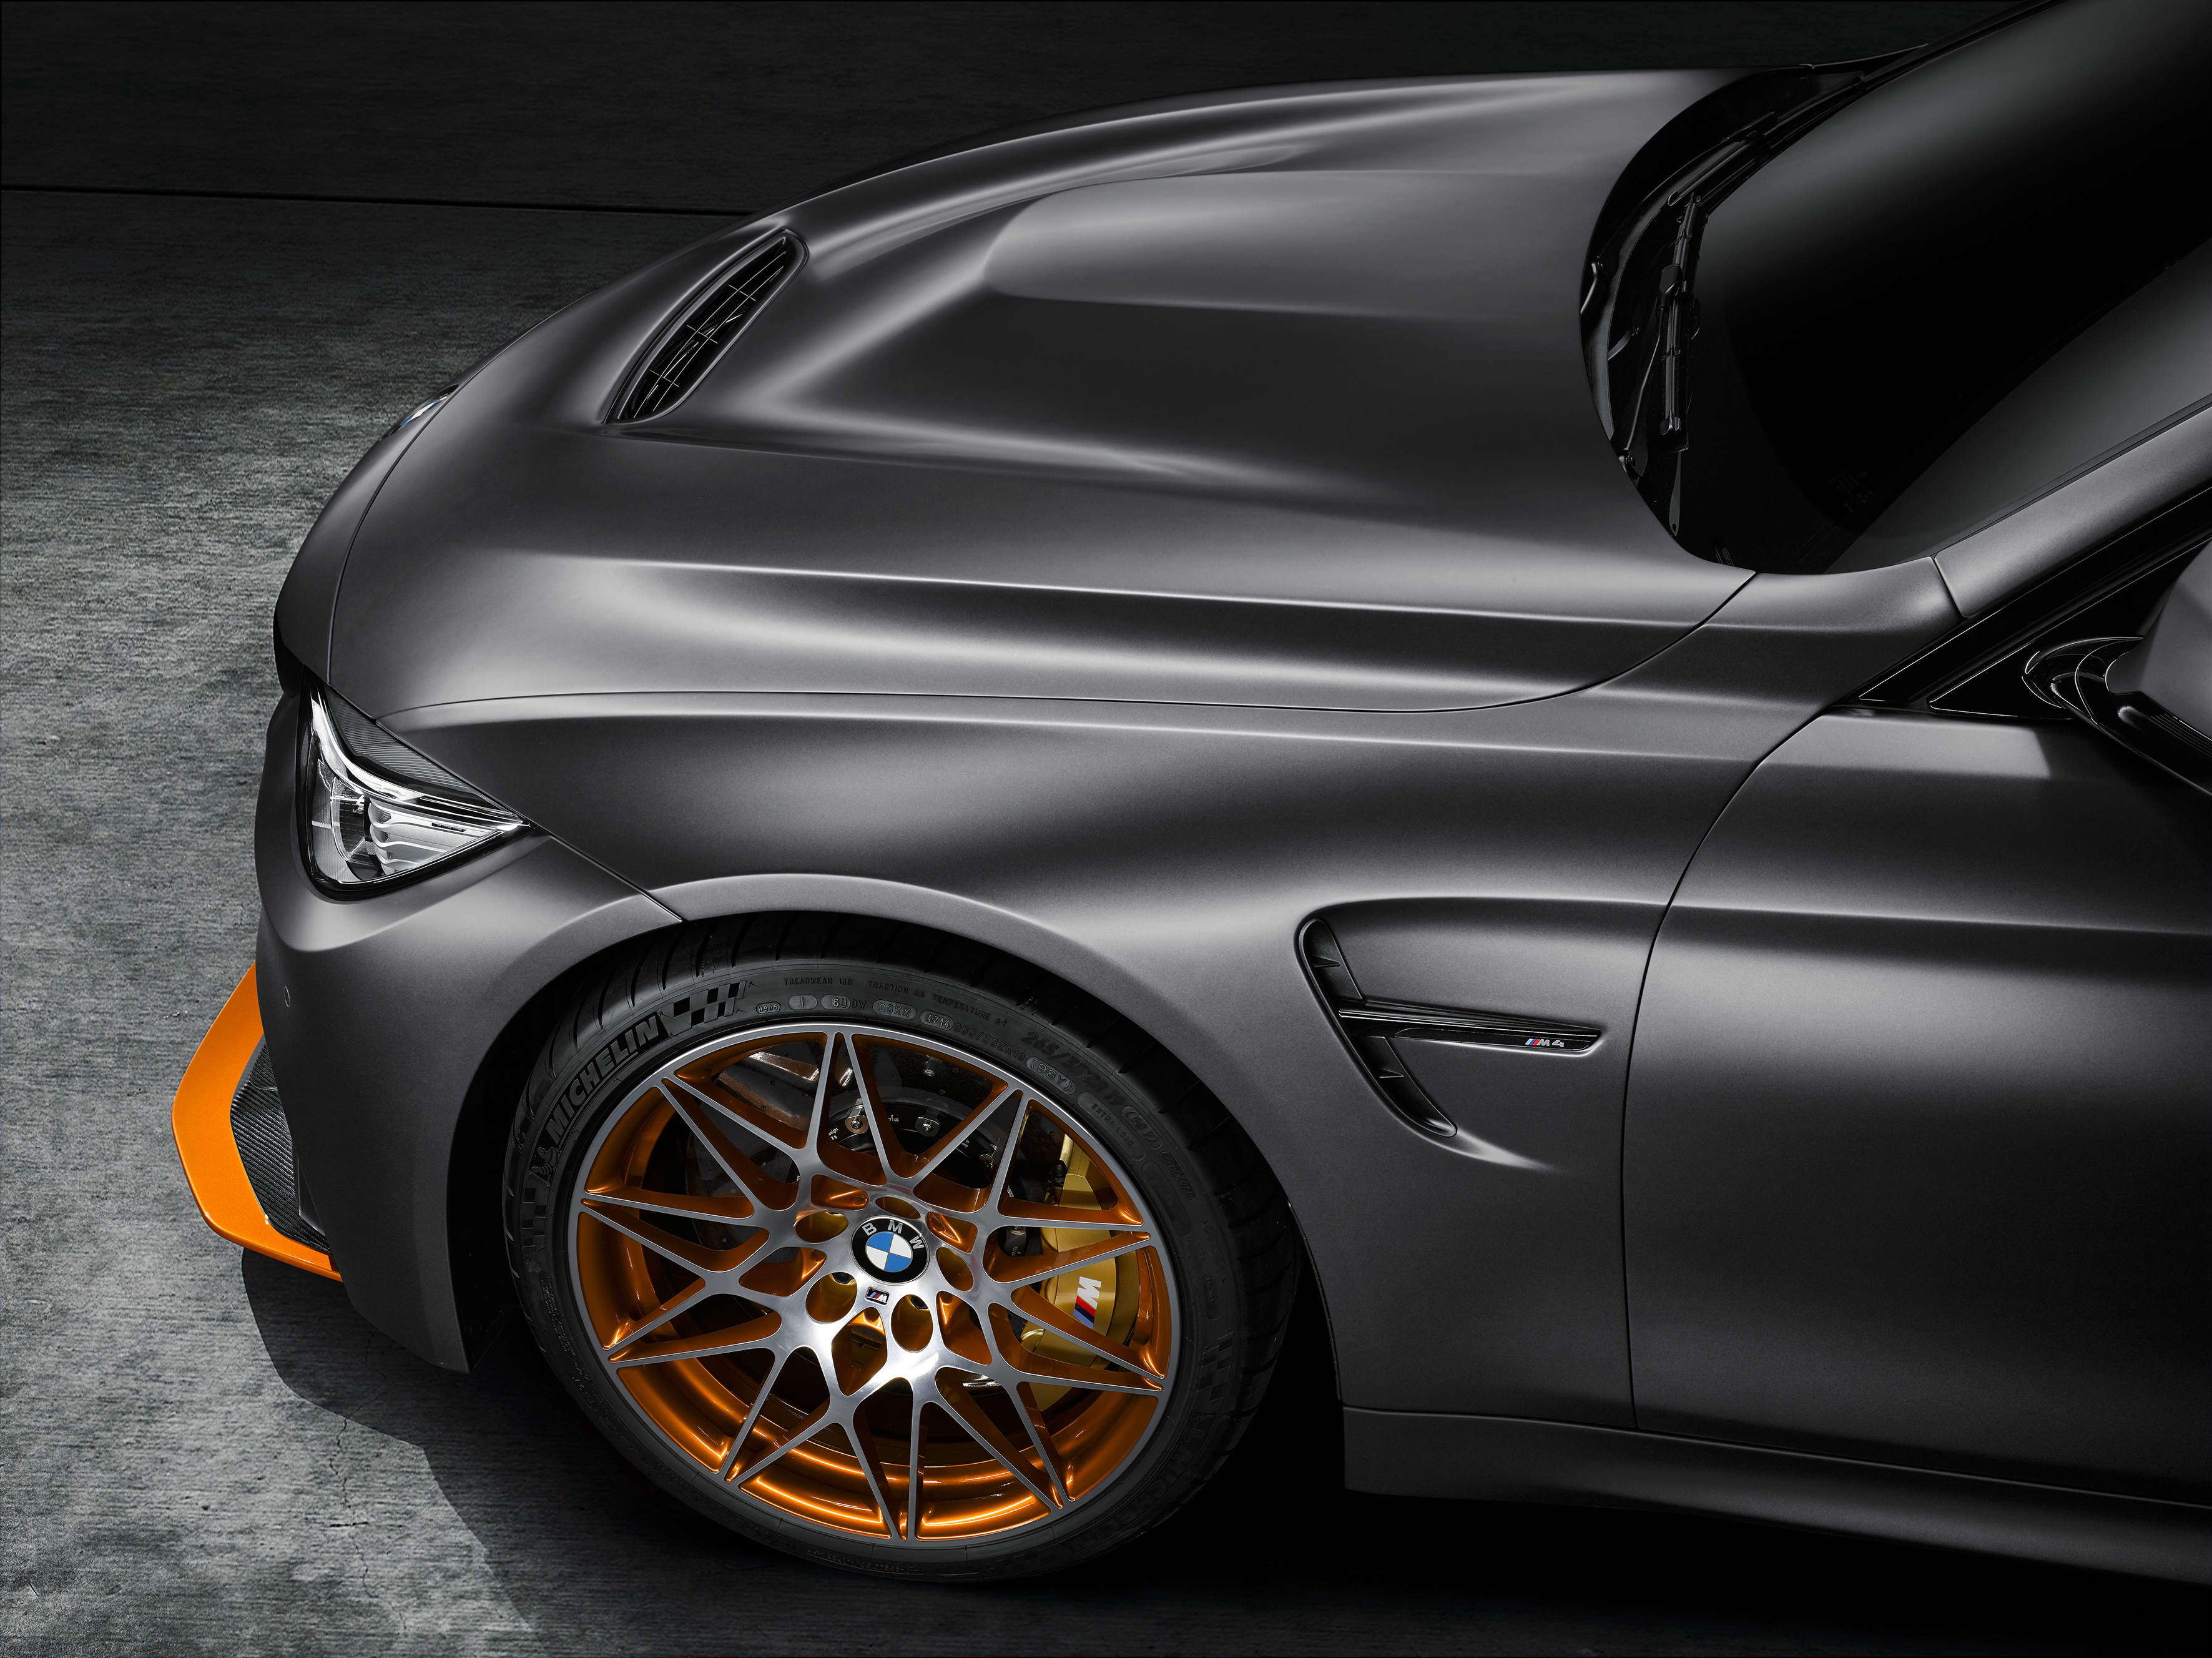 BMW M4 GTS 2016 revealed